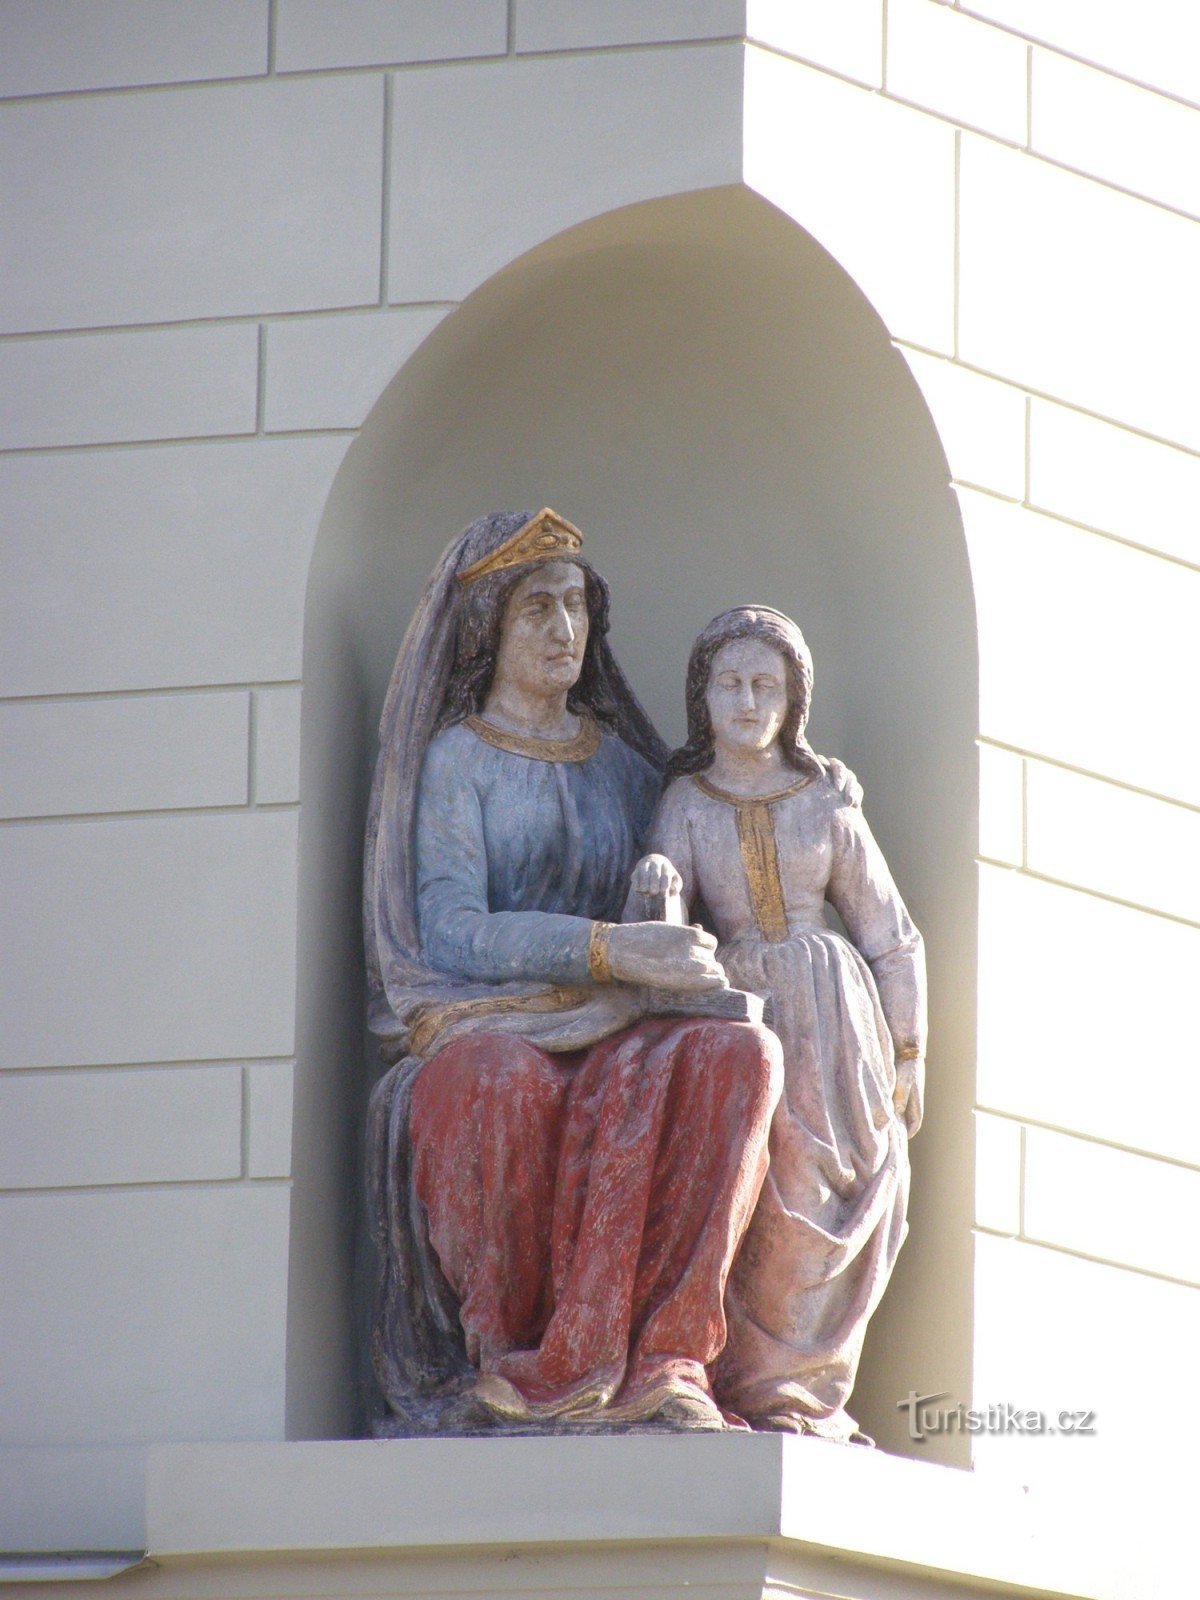 Týnec nad Labem - casa burguesa No. 74 con la estatua de St. Ana y la Virgen María